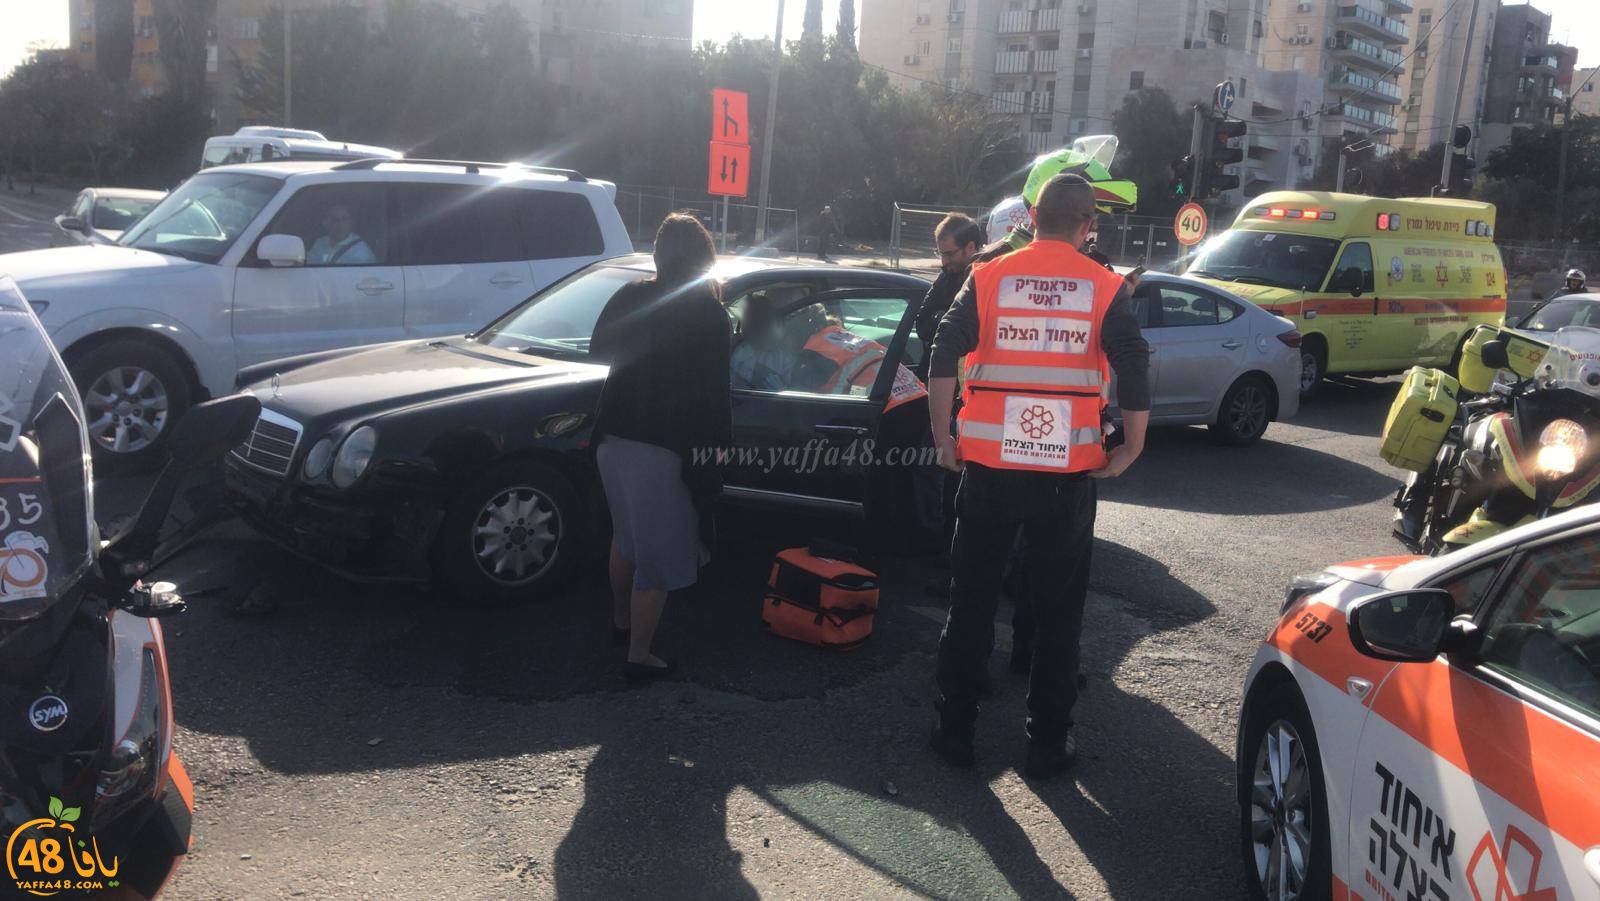  بالصور: إصابة طفيفة بحادث طرق بين مركبتين في مدينة يافا 